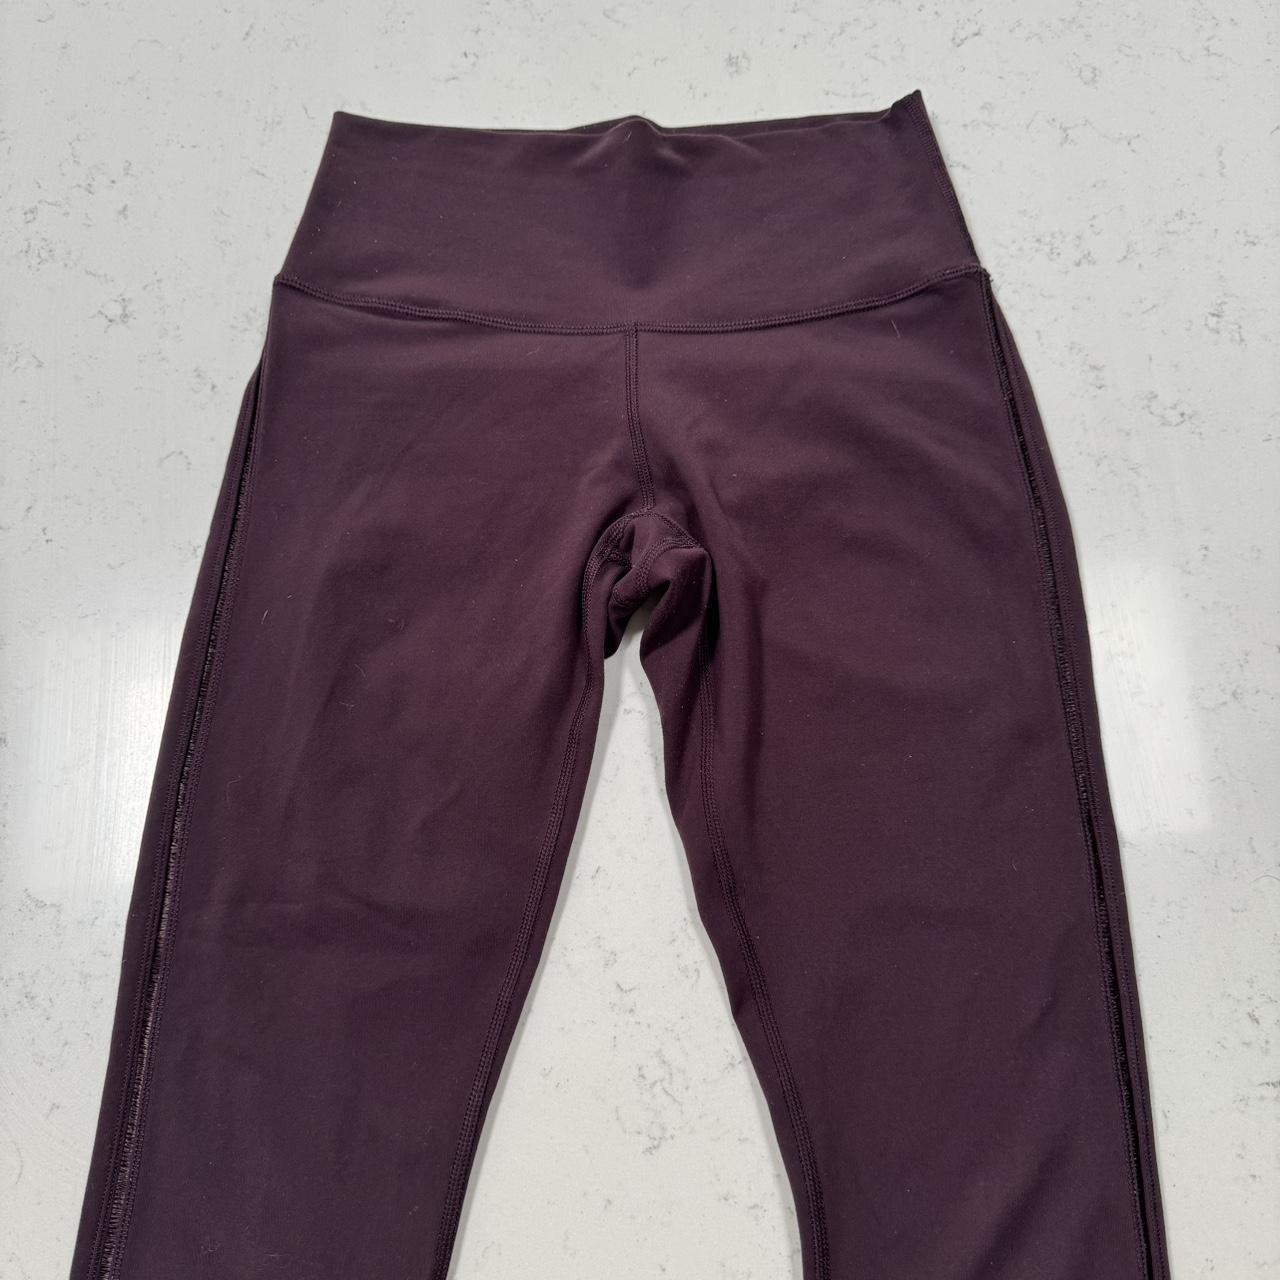 Dark purple or burgundy colored Lululemon leggings. - Depop